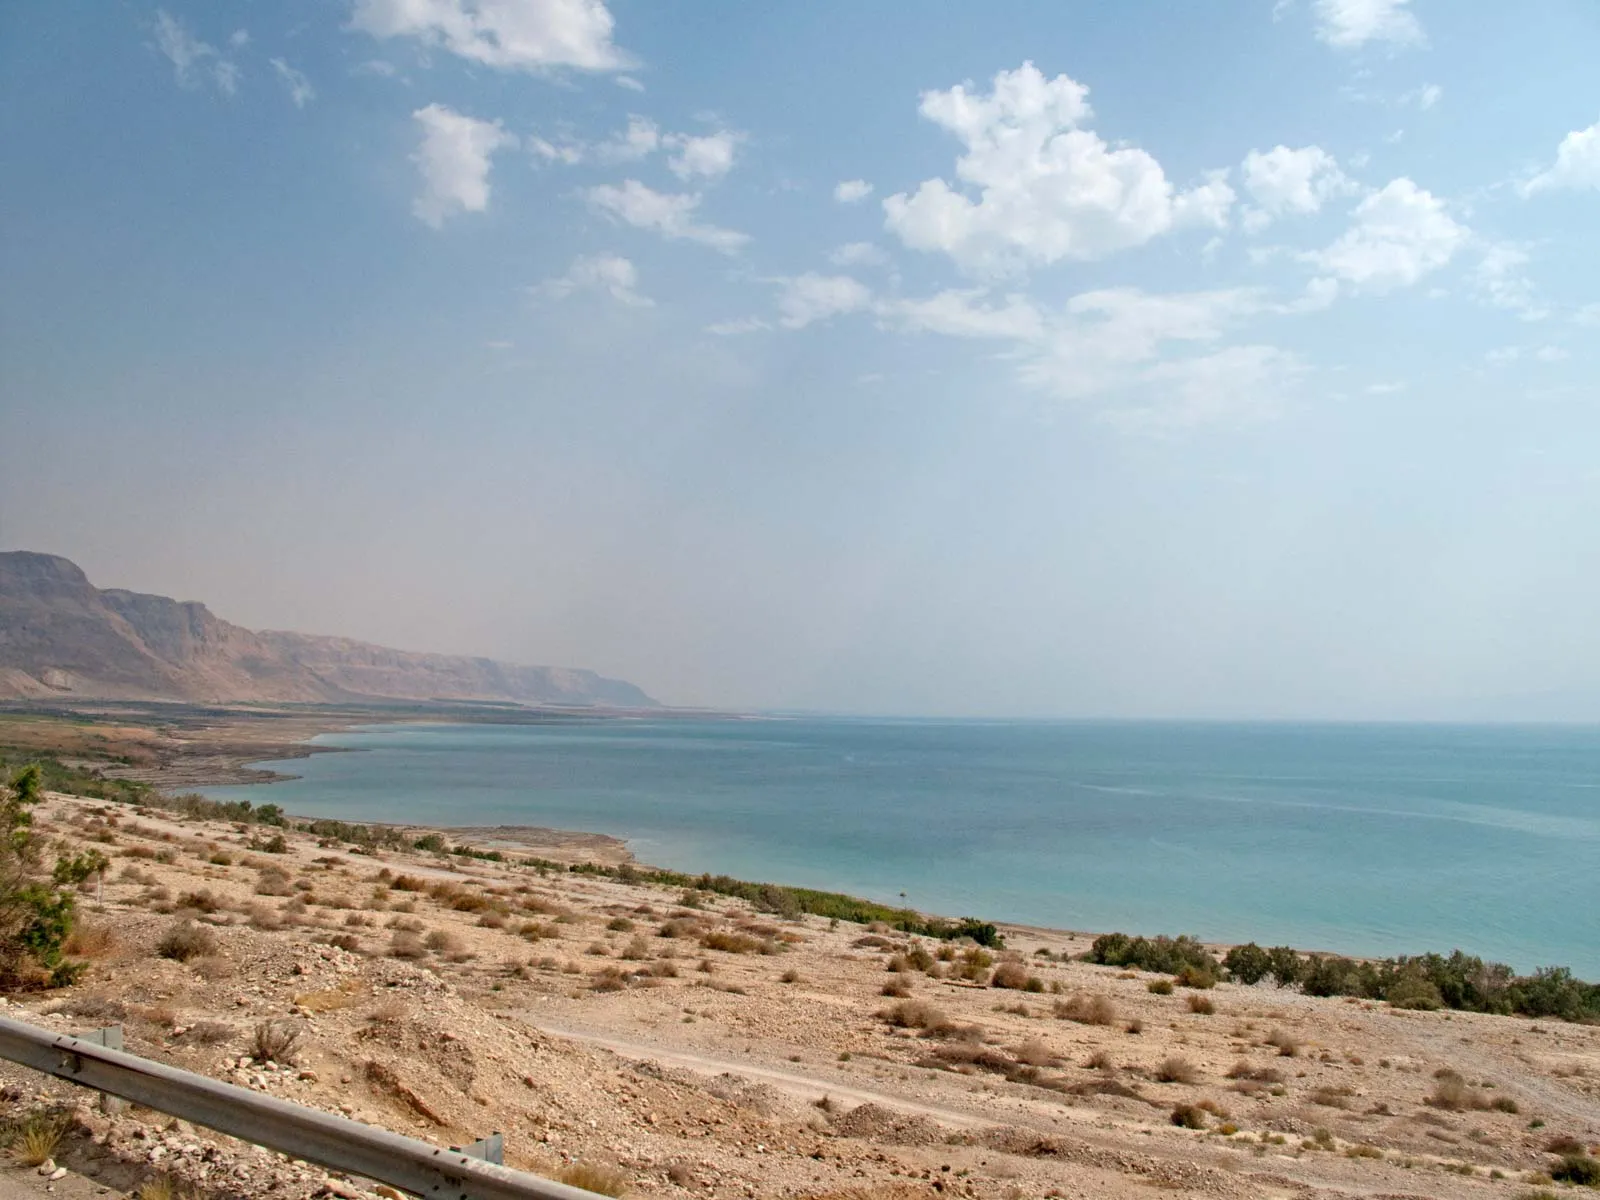 Đường bờ biển Chết, phía đông Israel. Ảnh: Shawn McCullars